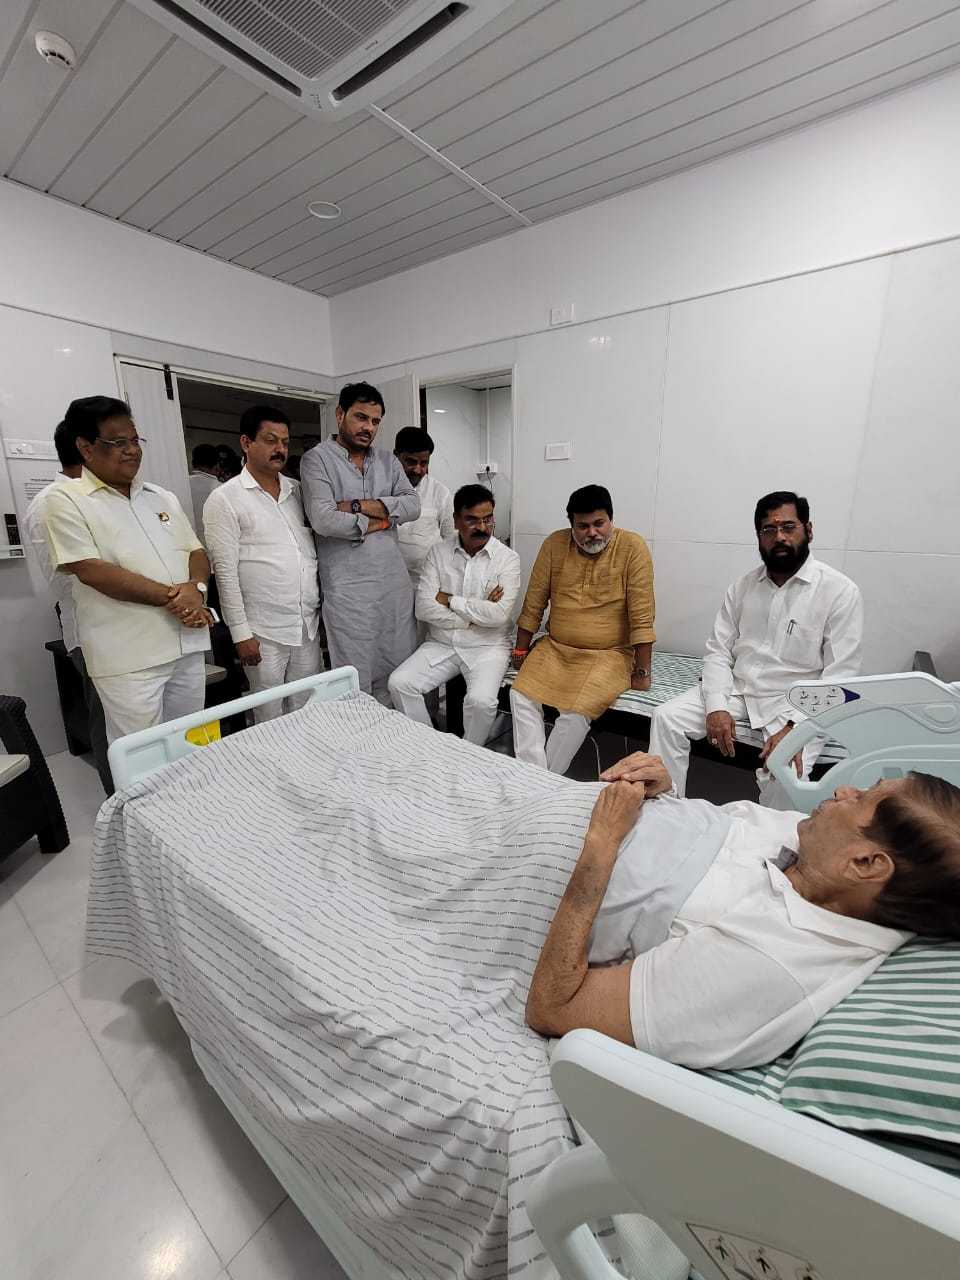 मुख्यमंत्री शिंदे यांनी प्रकाश आमटे,गिरीश बापट यांची रुग्णालयात भेट घेऊन प्रकृतीची केली विचारपूस